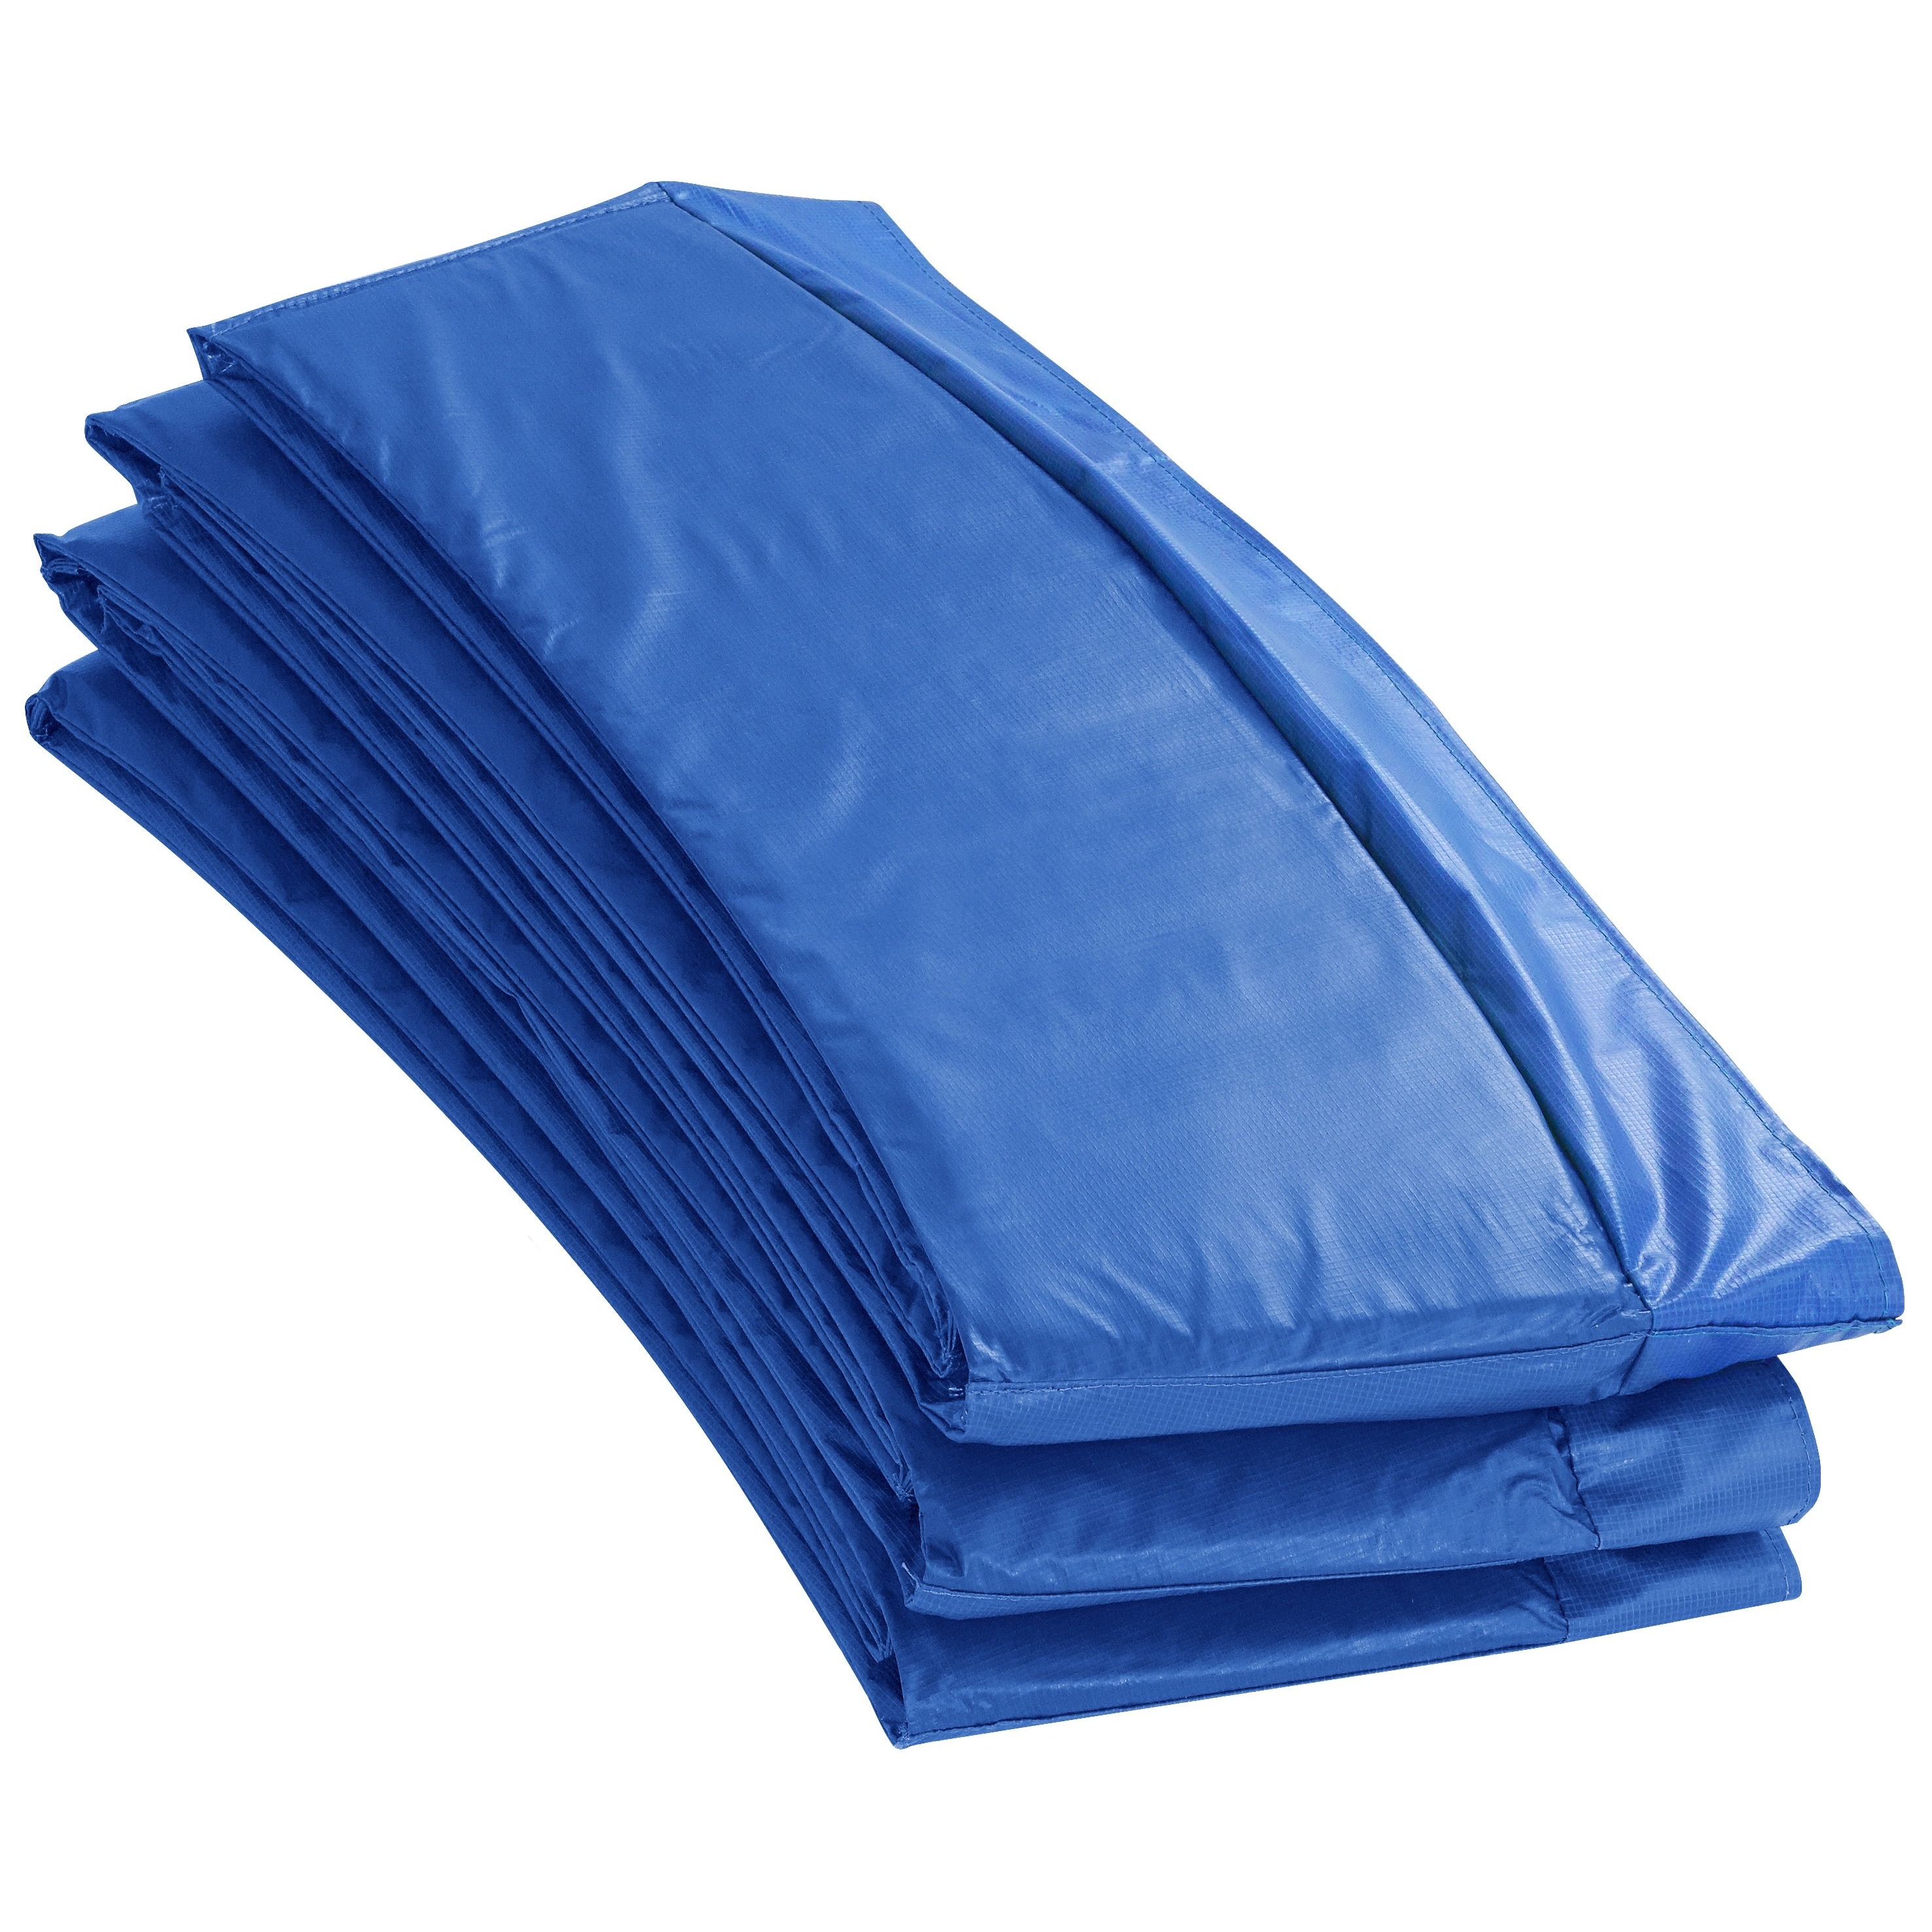 14 foot Round Blue Premium Trampoline Safety Pad